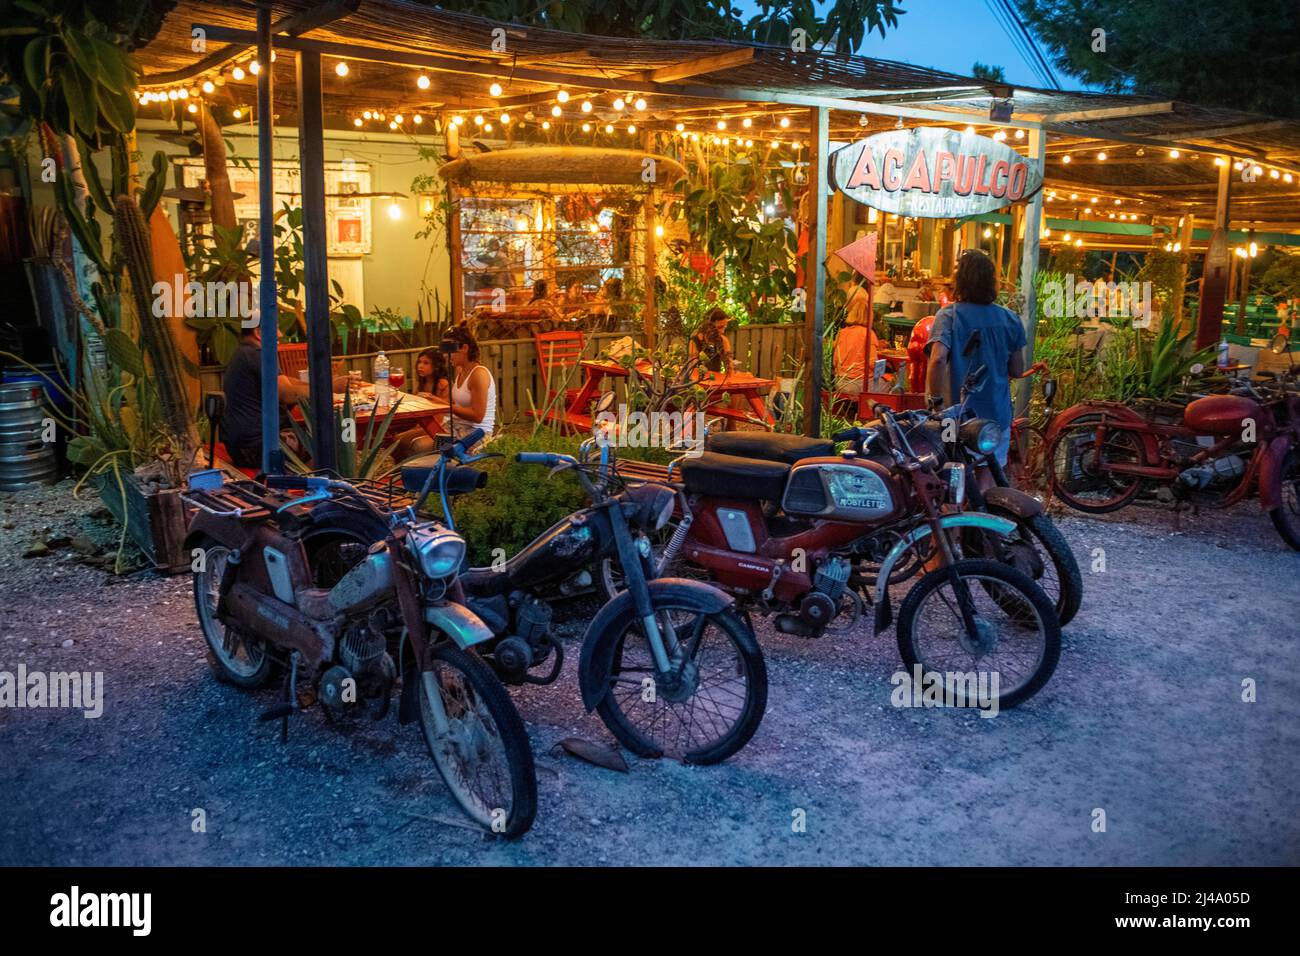 Motoristas retro en el restaurante del bar hippie Acapulco Surf Bar, Es Calo, Formentera, Islas Baleares, España. Foto de stock